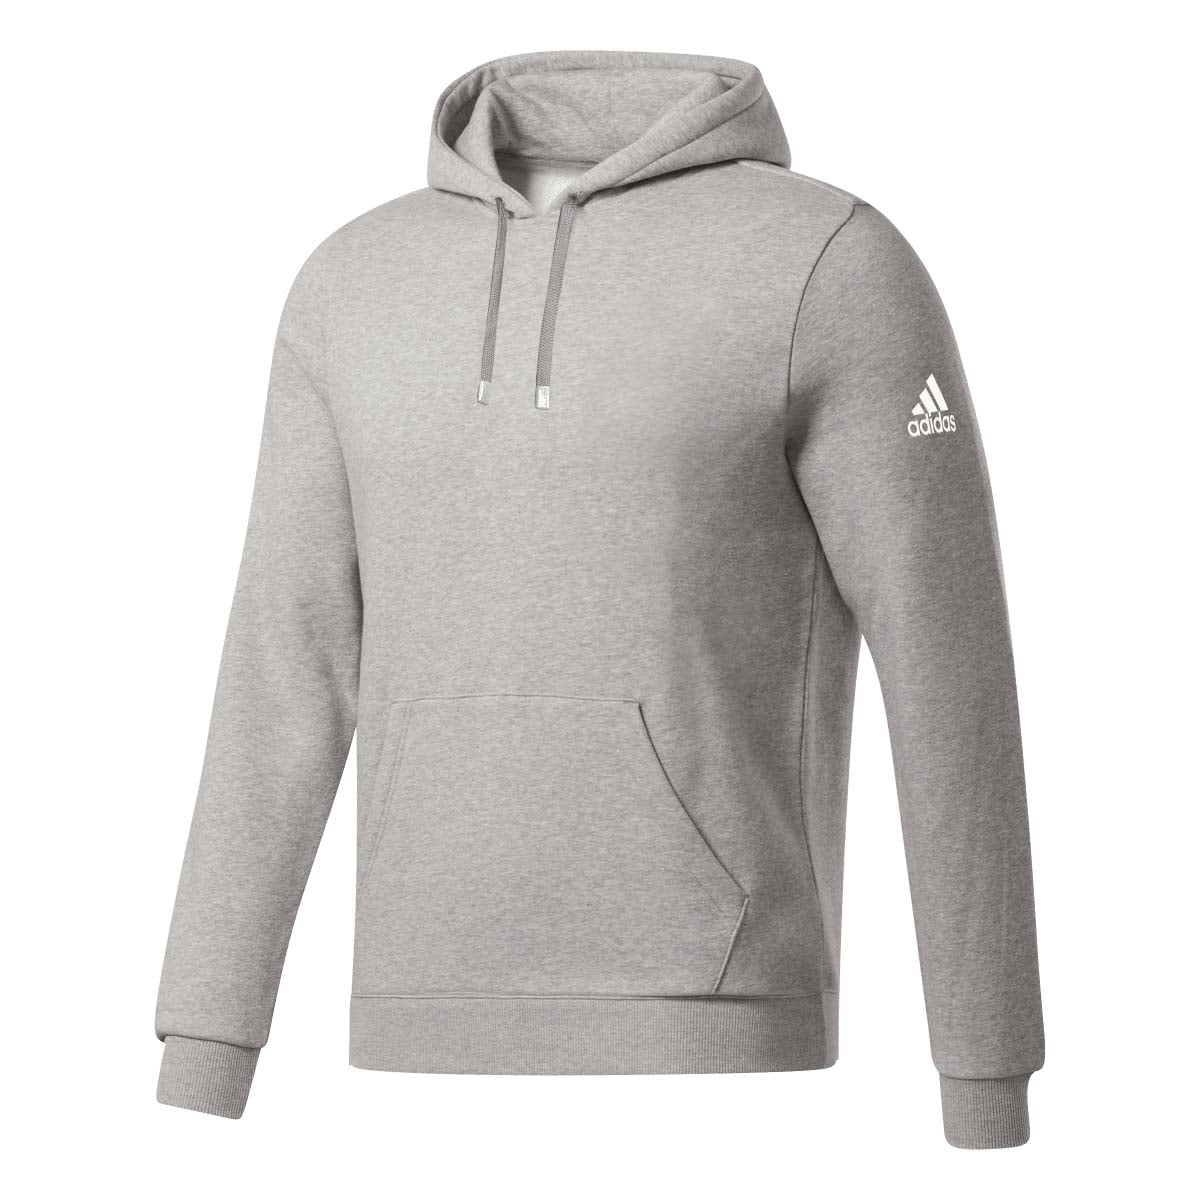 Adidas Men's Fleece Hoodie - Walmart.com